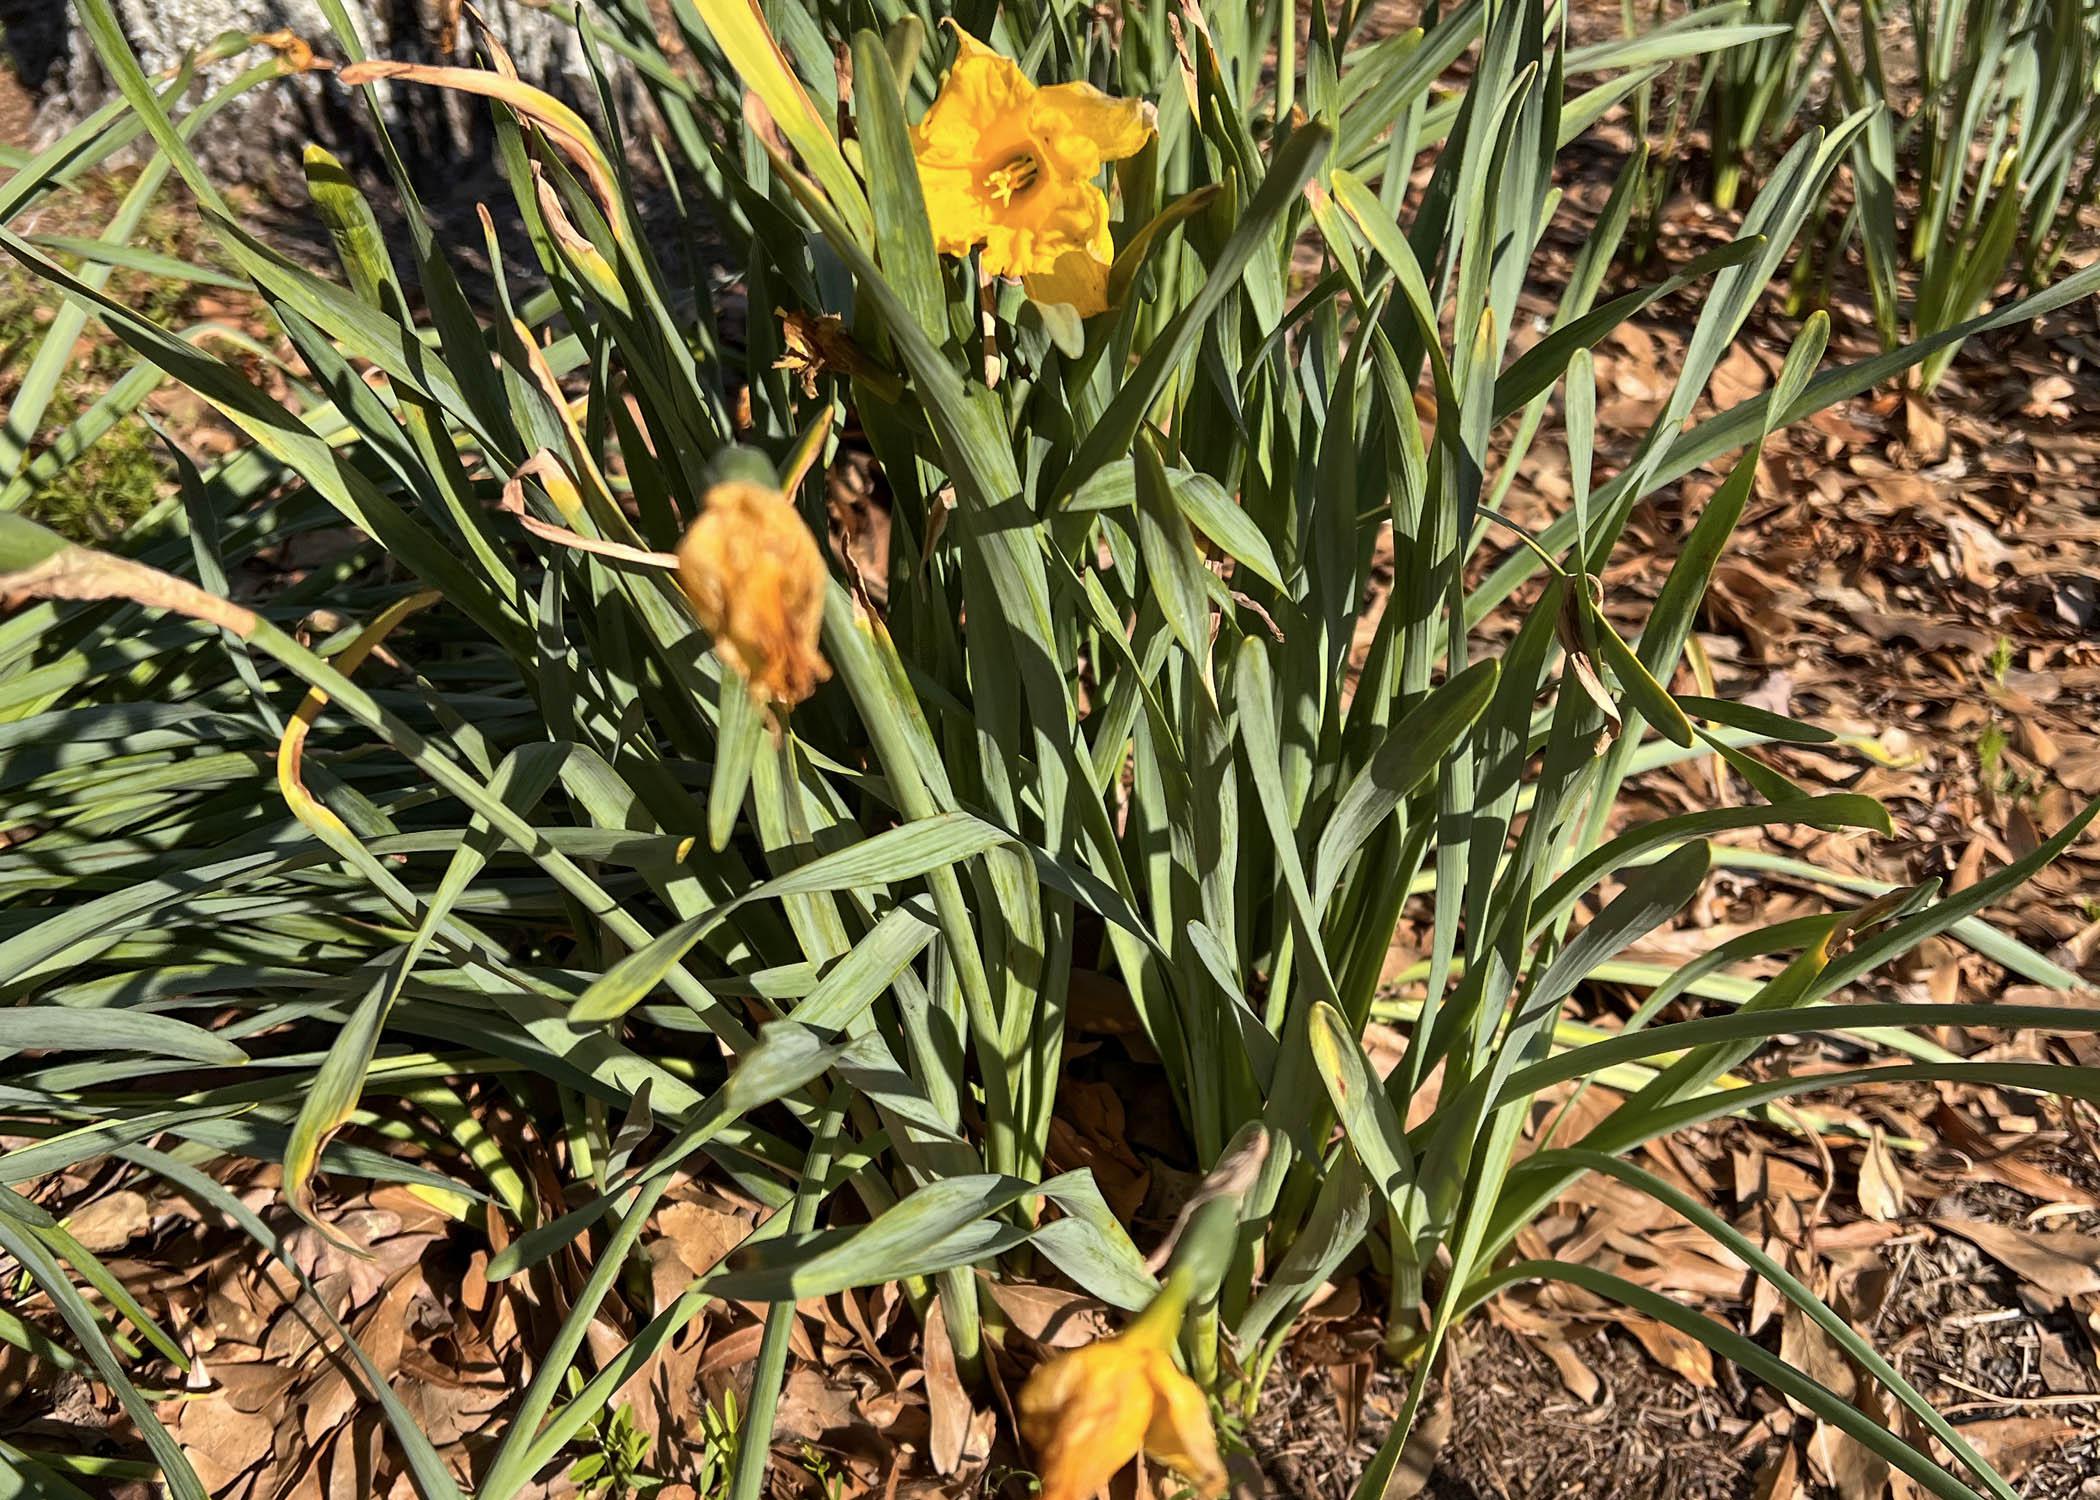 Frayed Daffodils